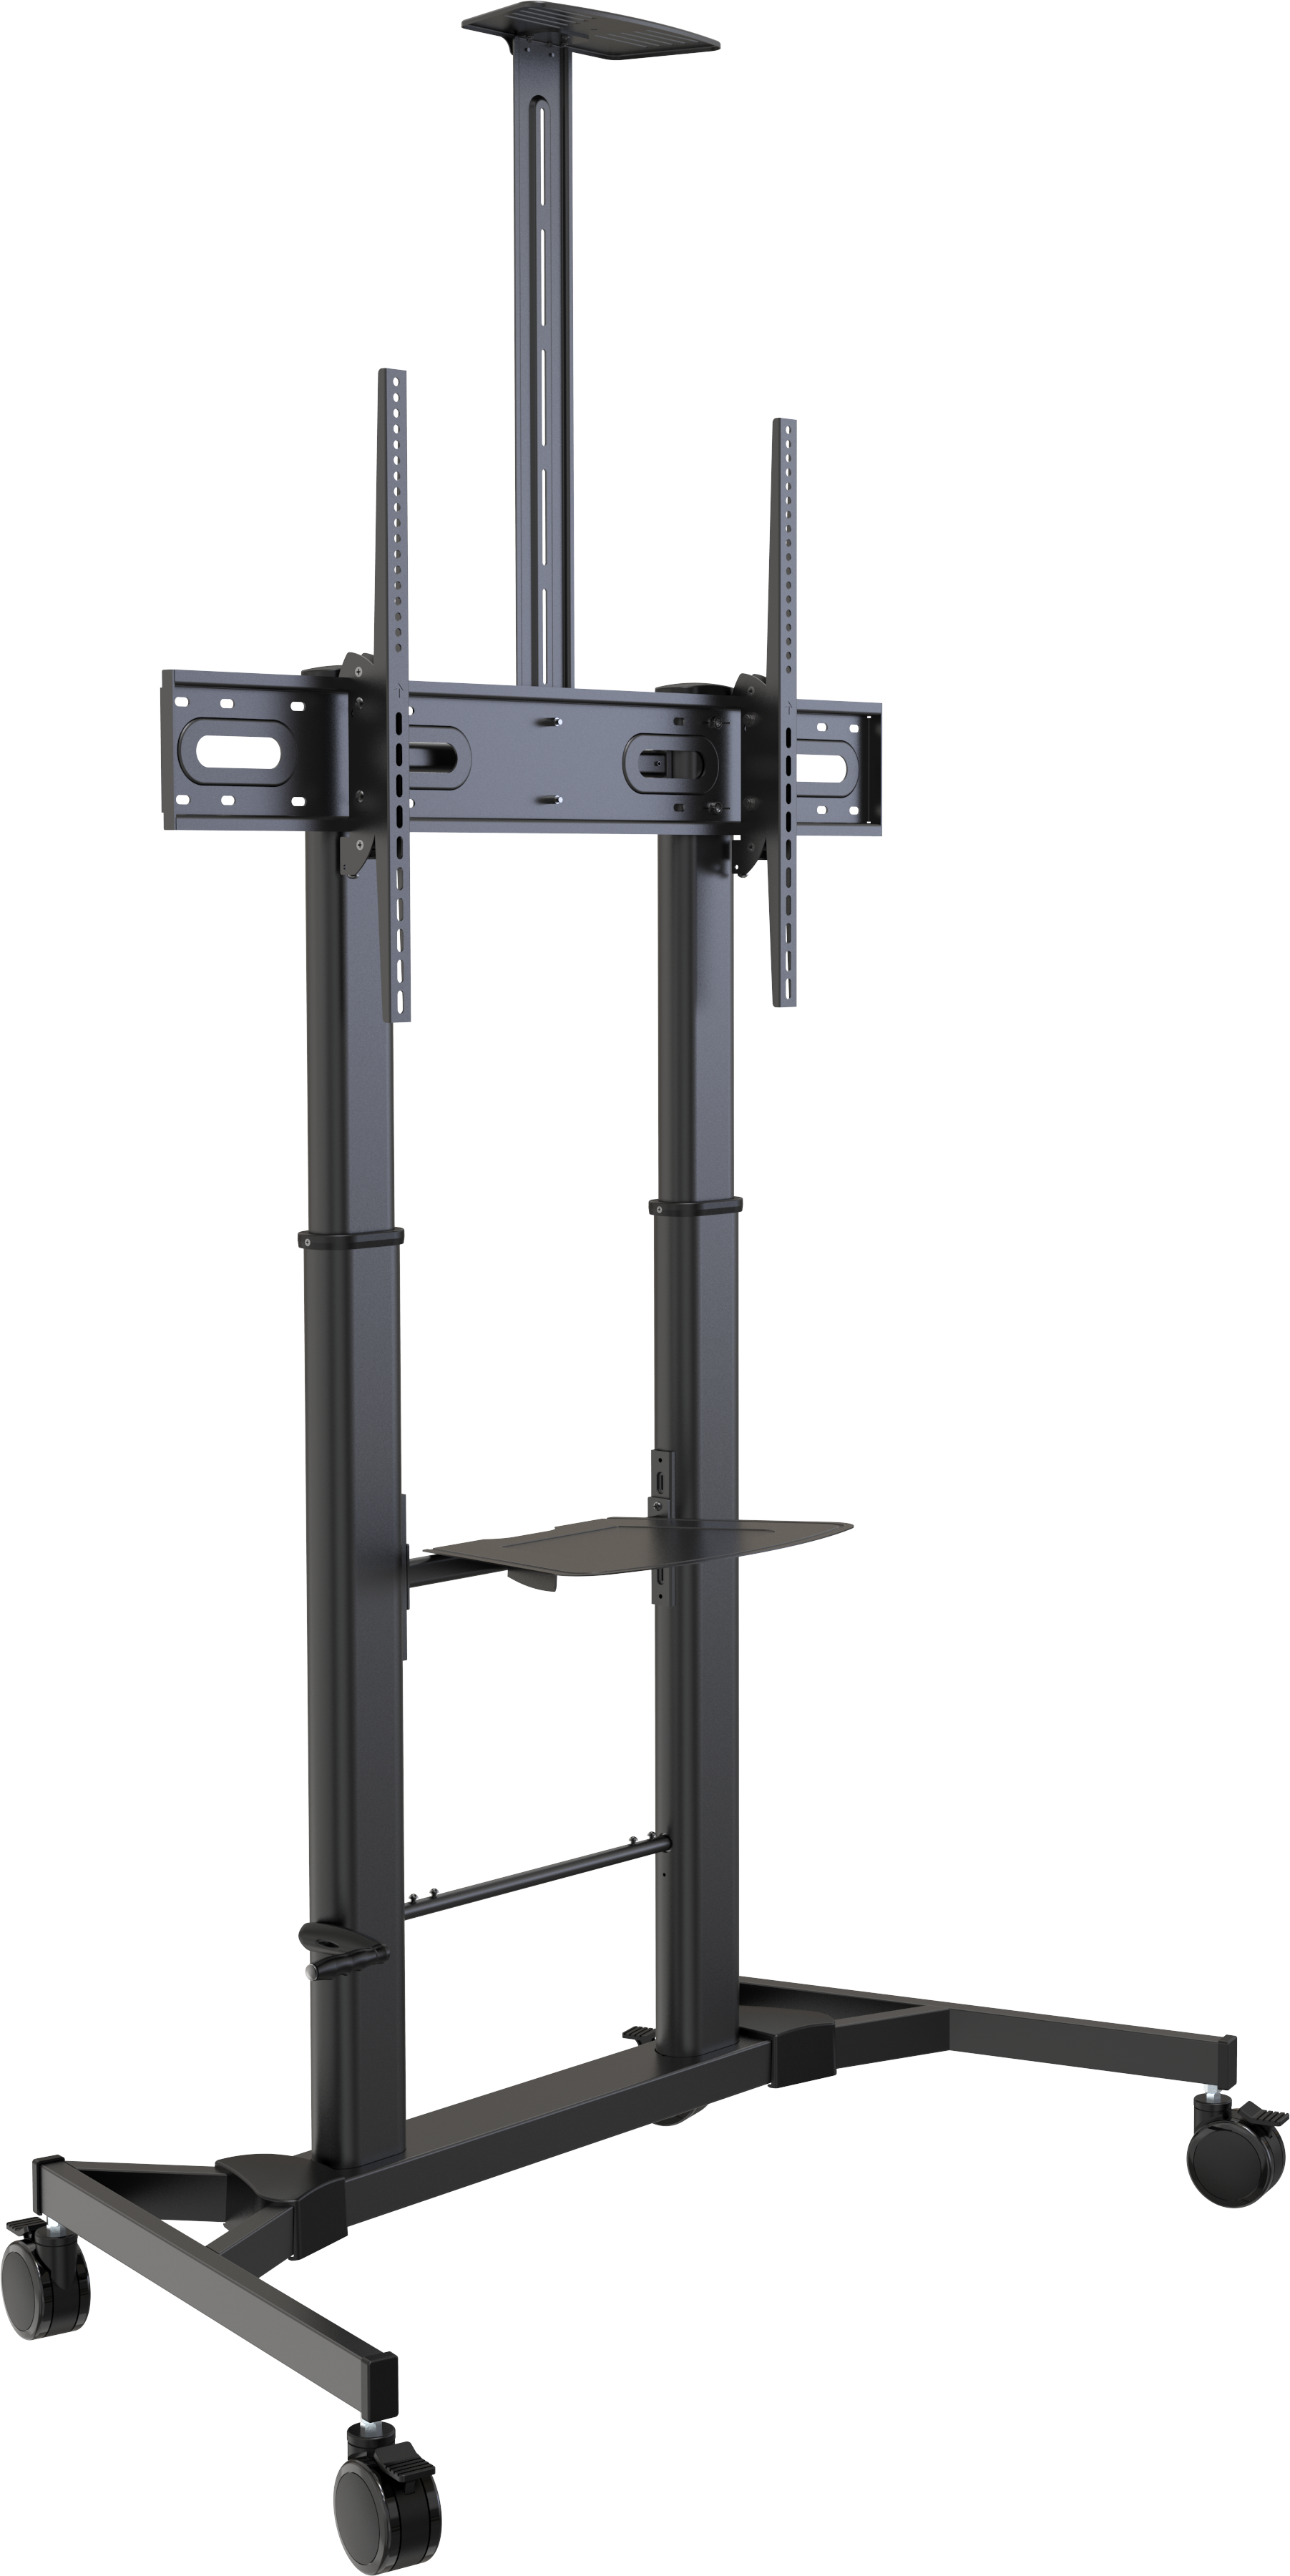 An image showing In hoogte instelbaar karretje voor monitoren tot 80 kg